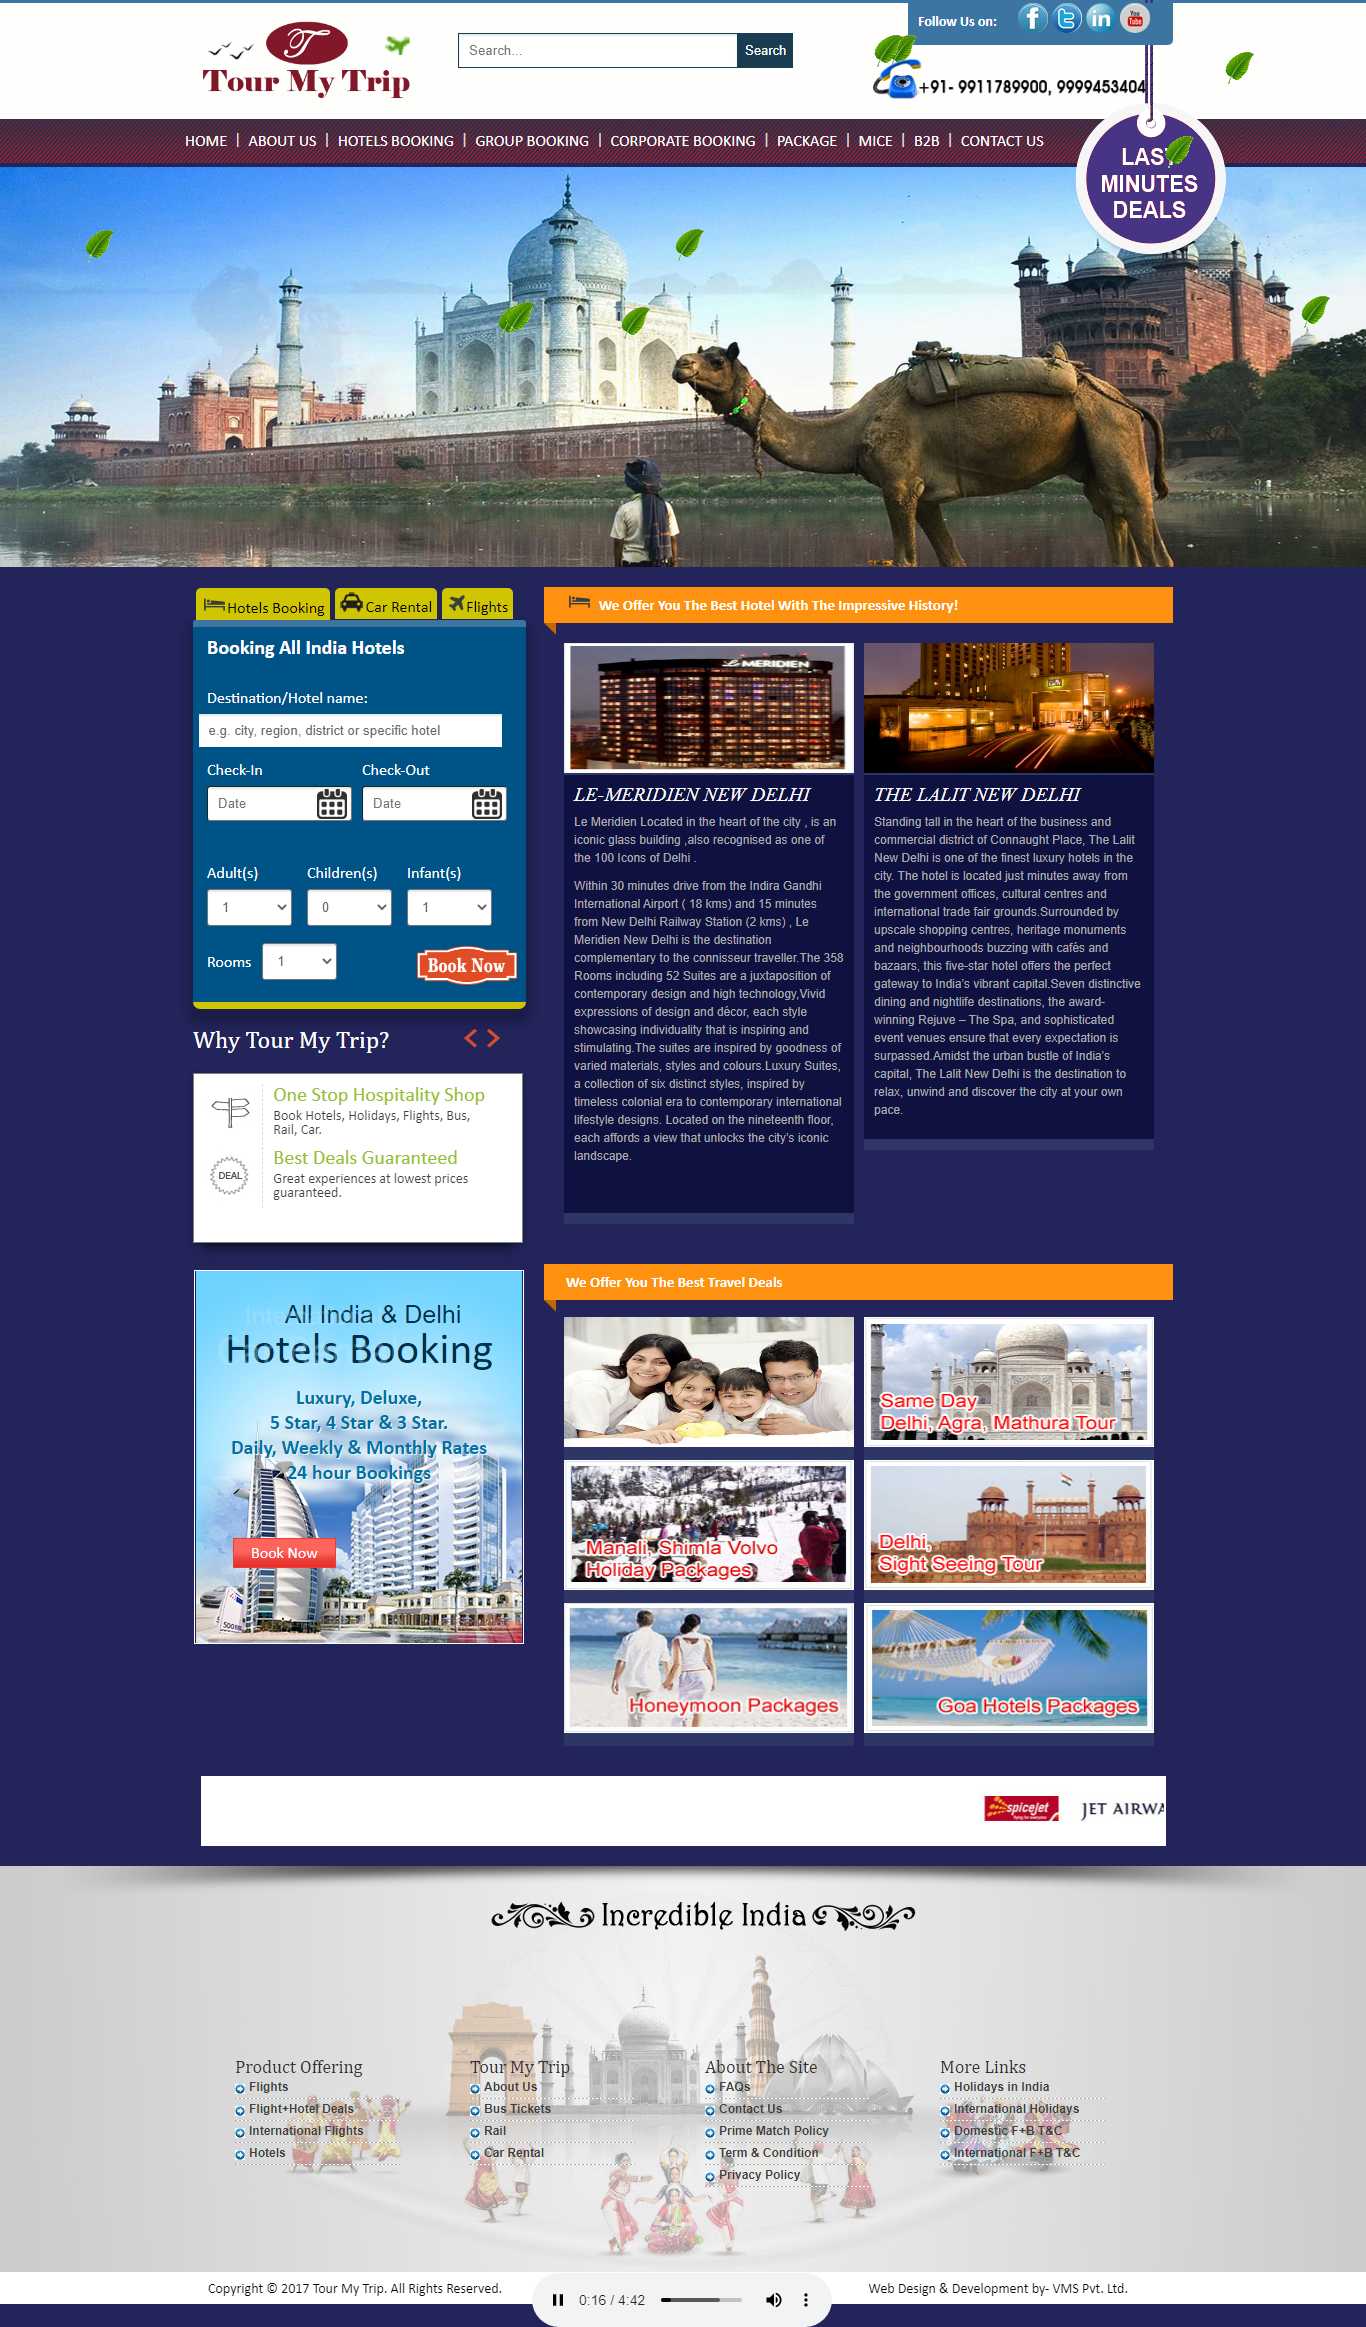 Website layout